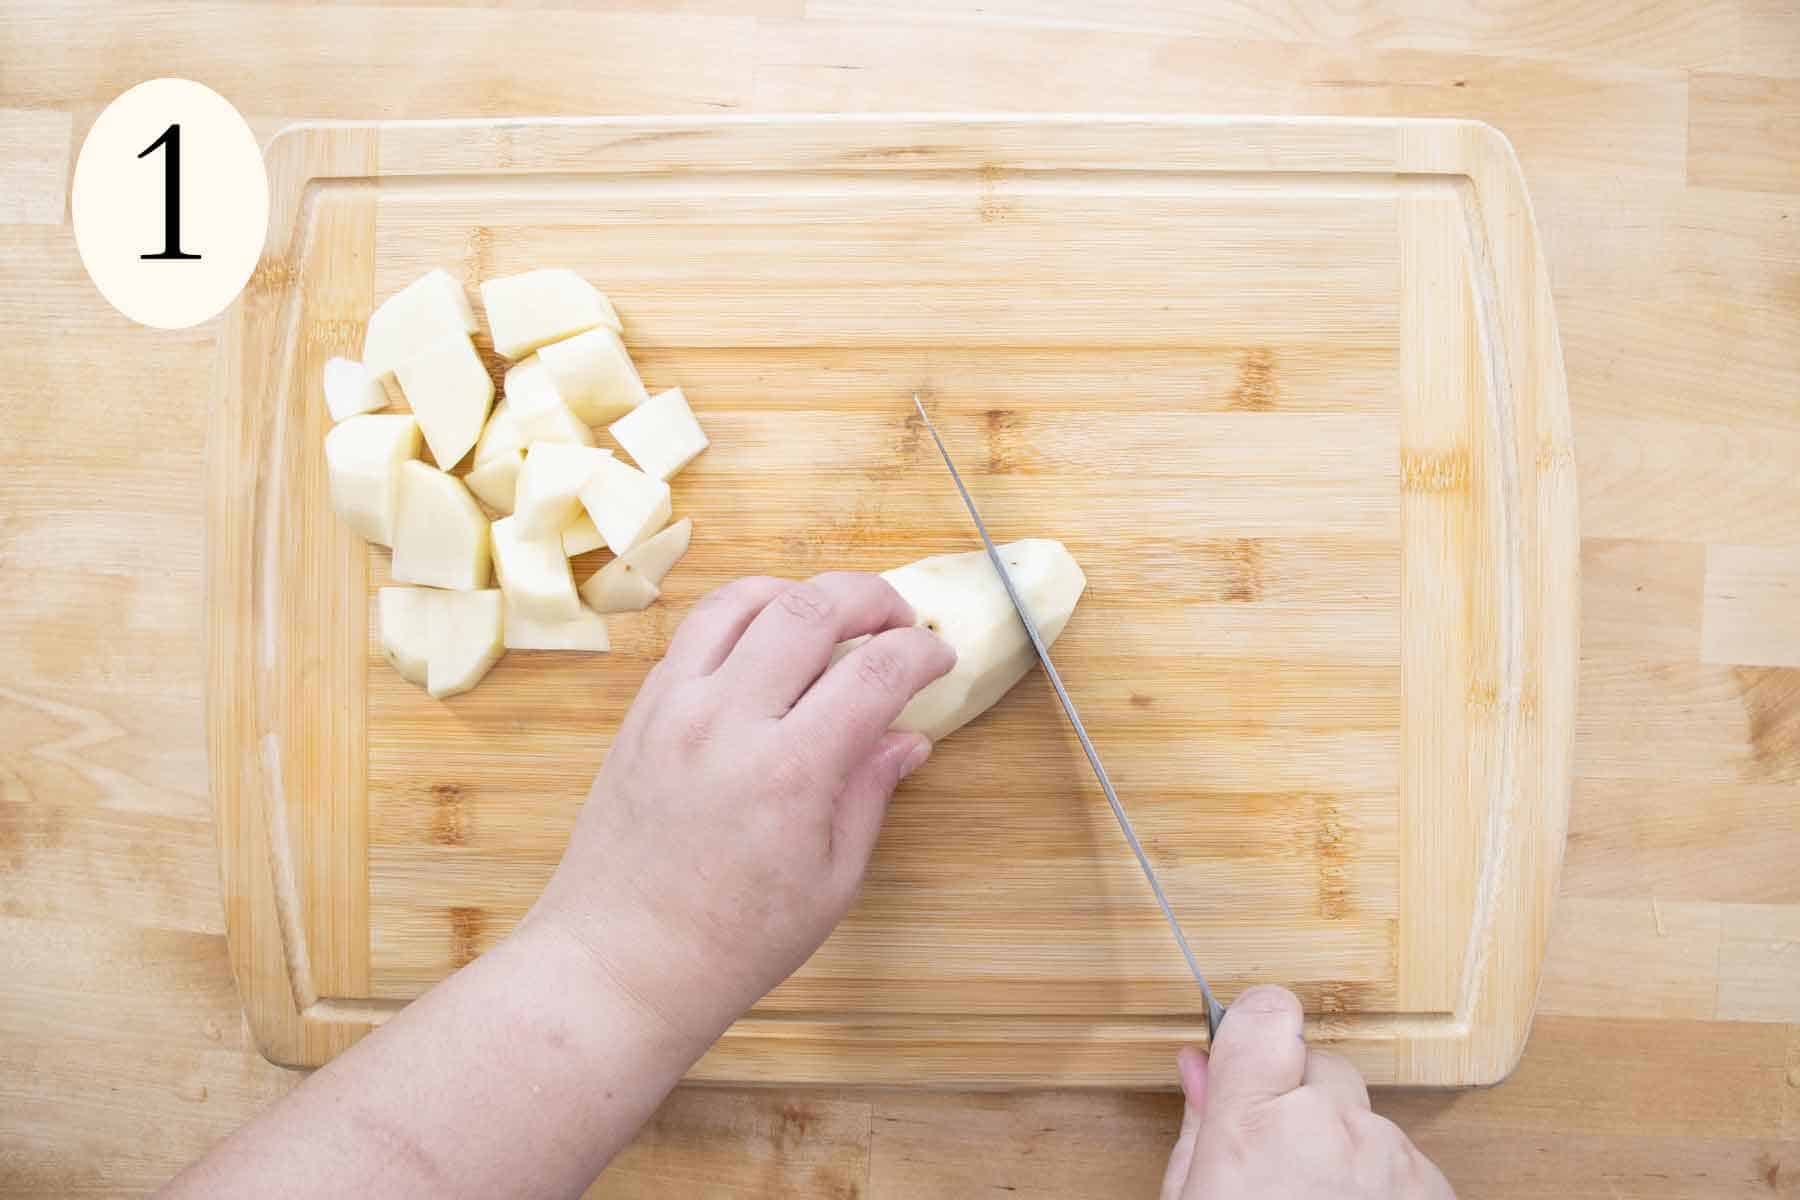 hands cutting a potato.